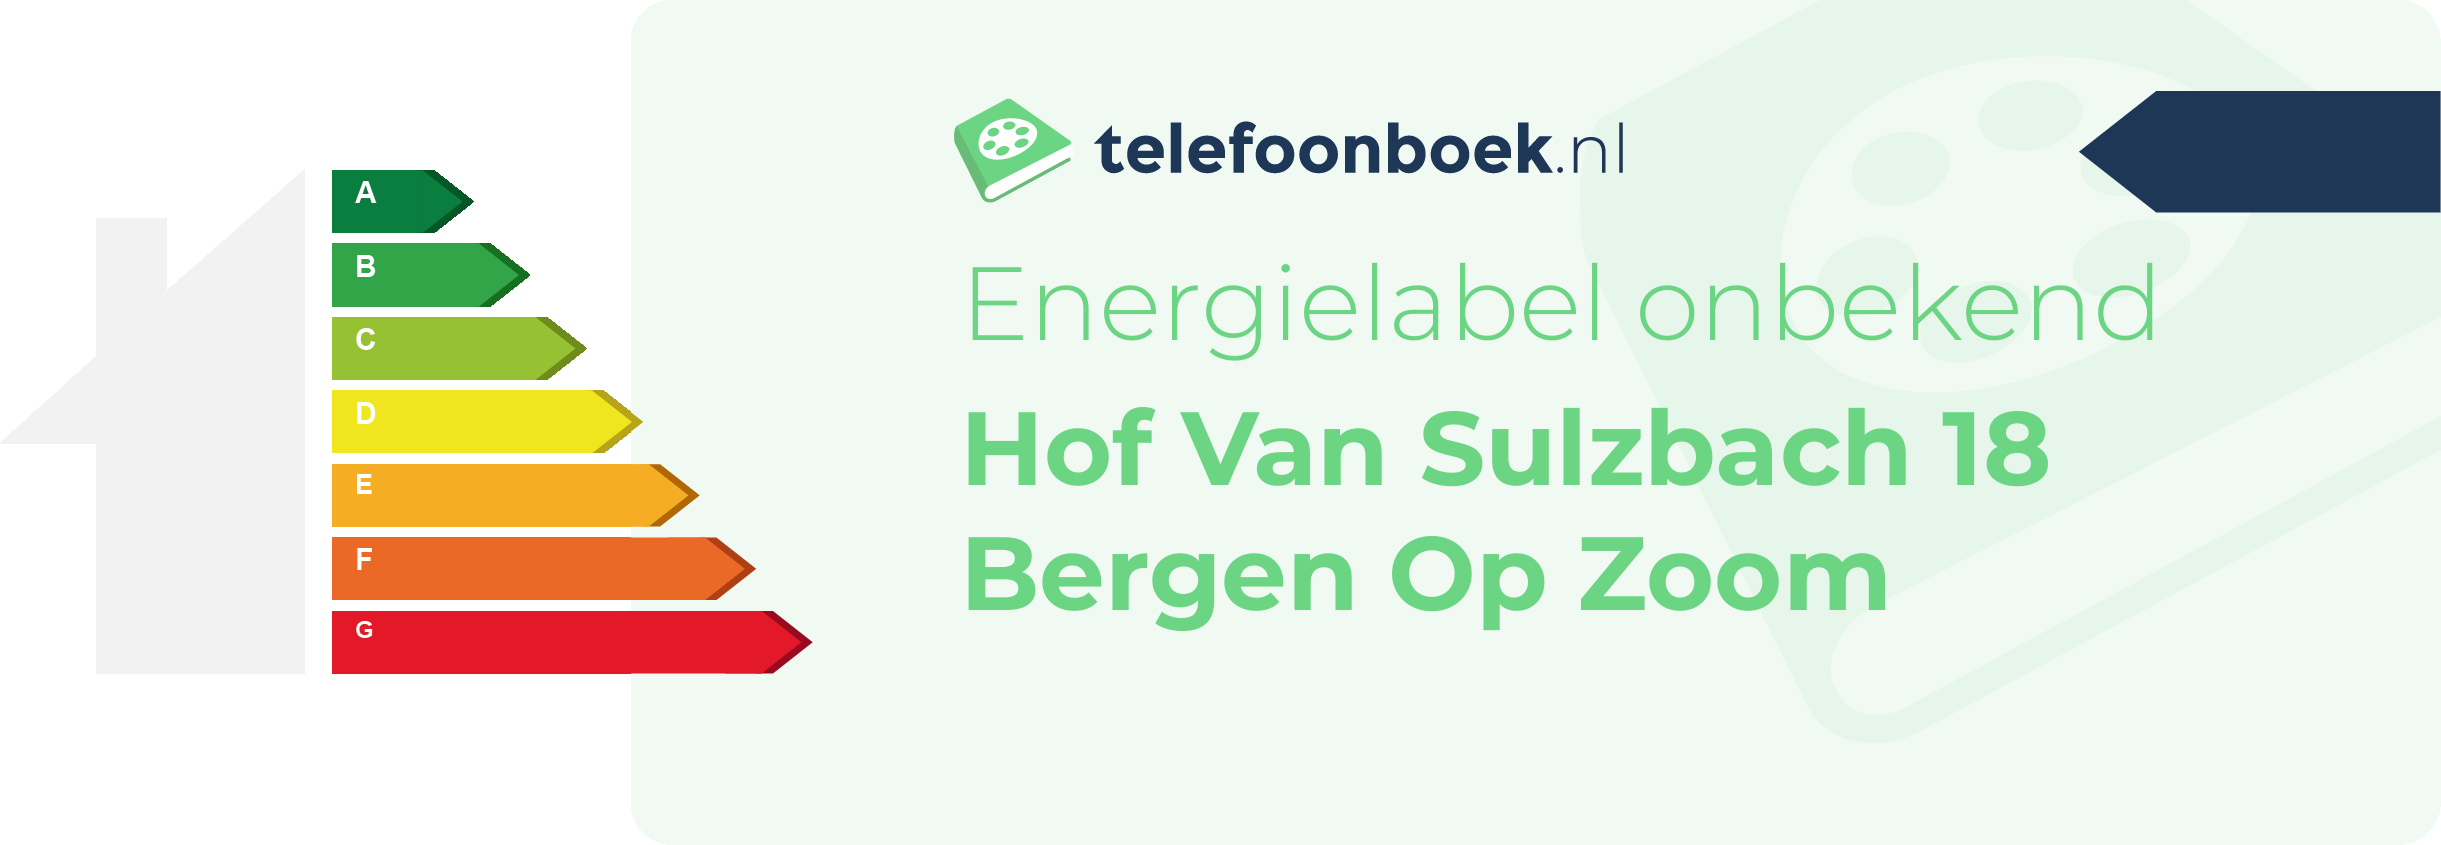 Energielabel Hof Van Sulzbach 18 Bergen Op Zoom